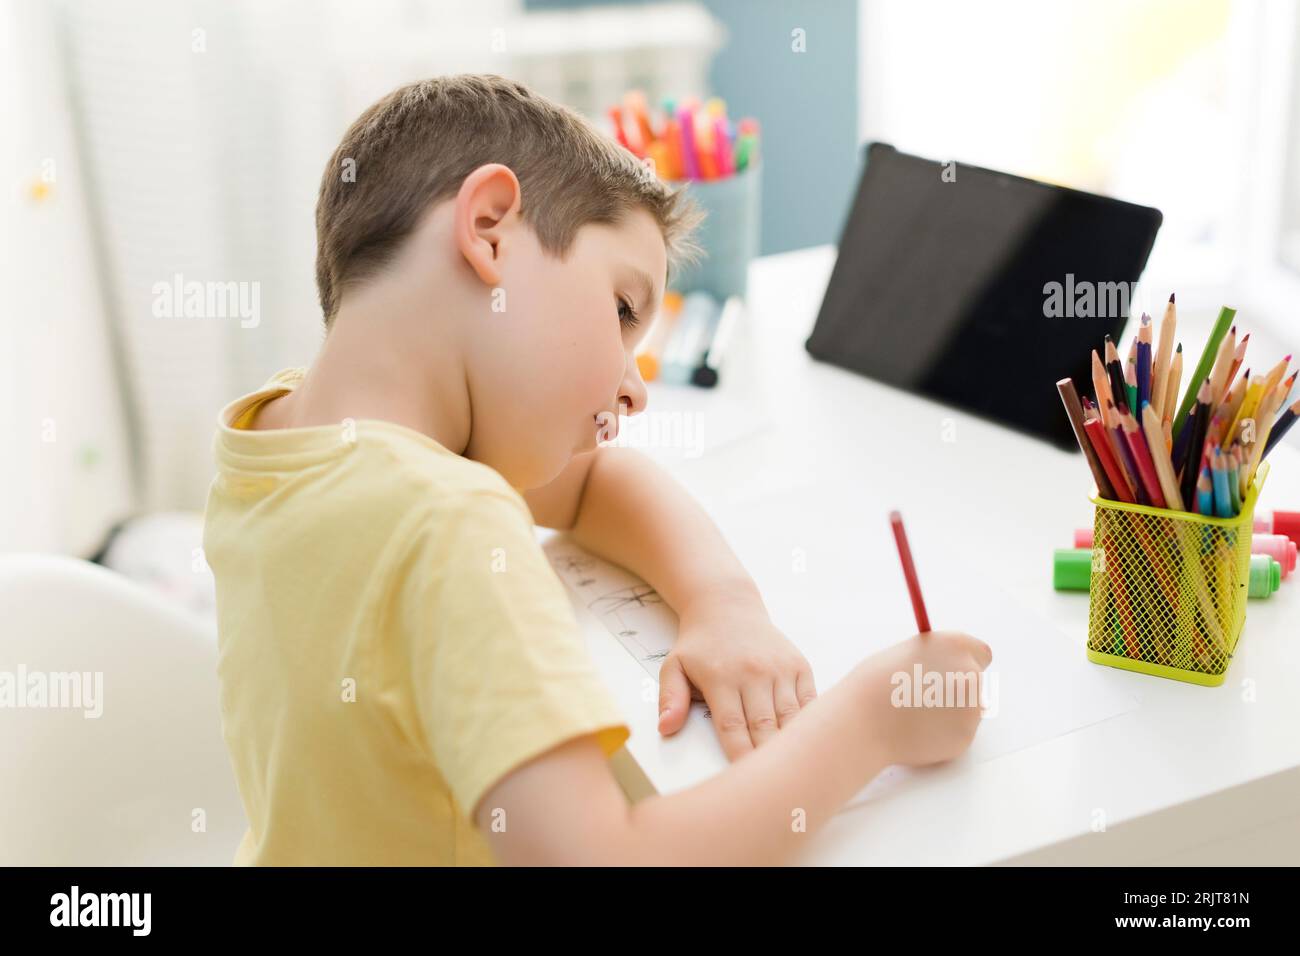 Dessin de garçon souriant avec un crayon de couleur près de la tablette pc à la maison Banque D'Images